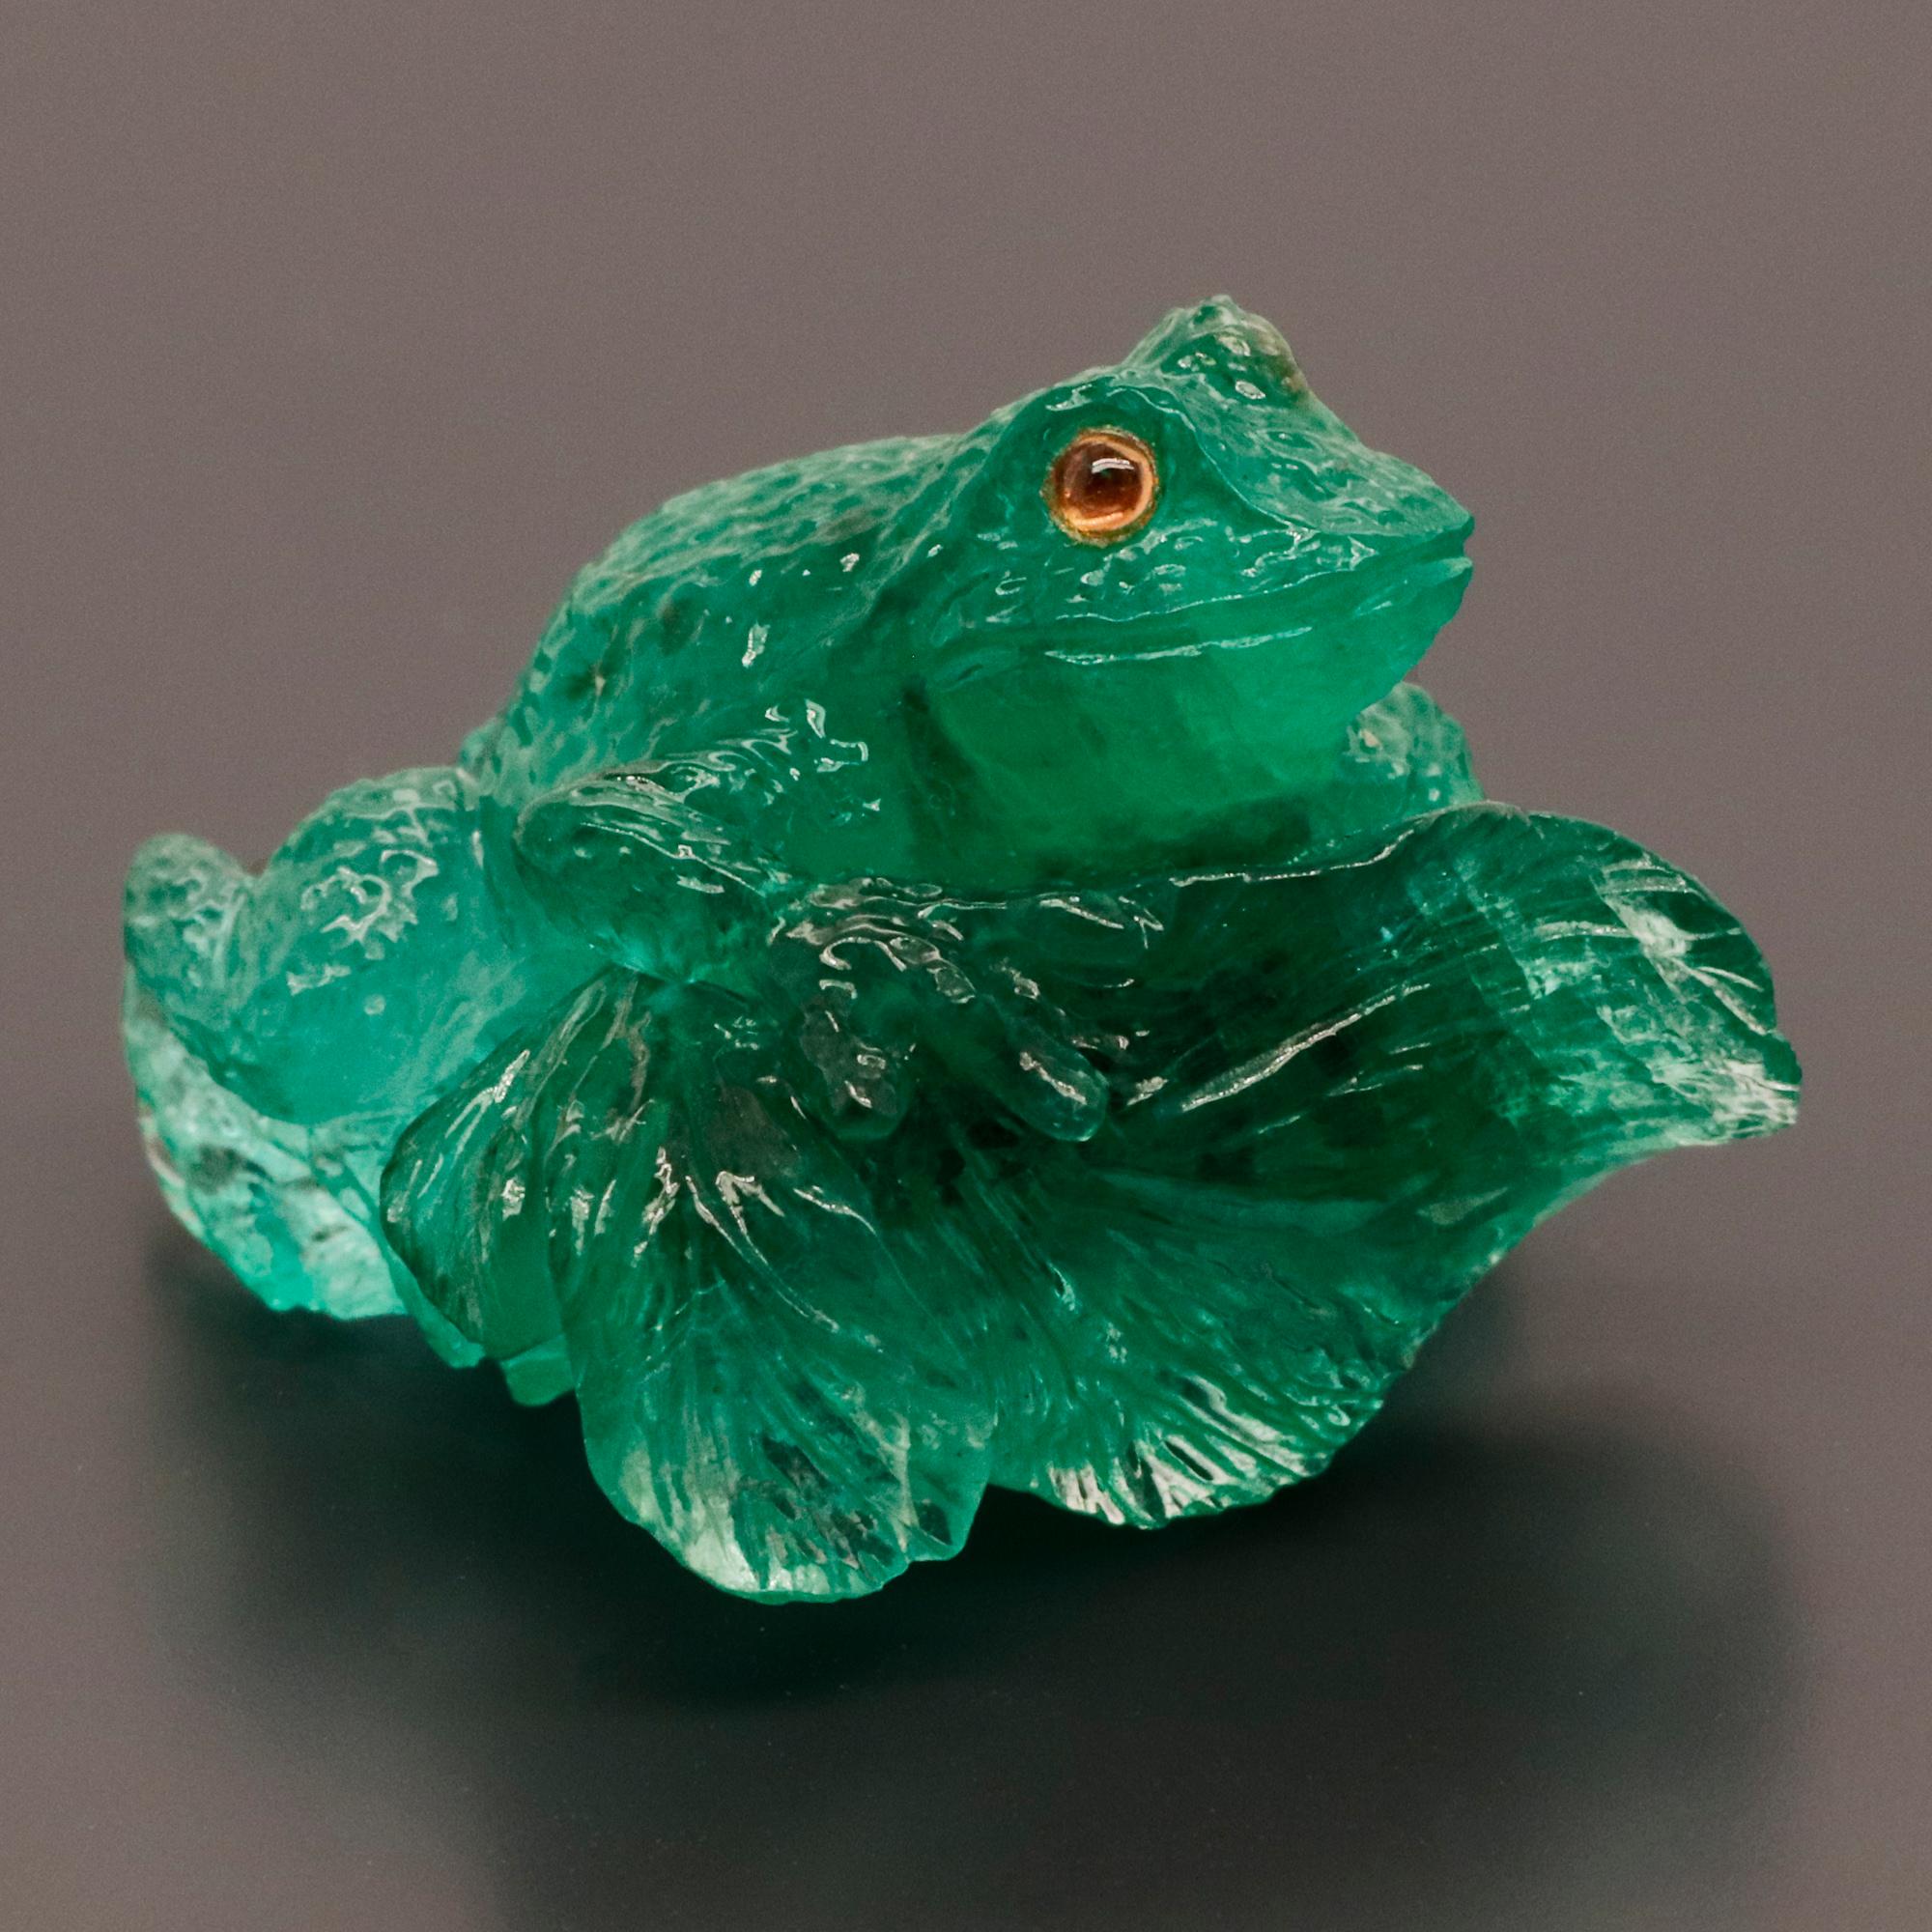 Ein kunstvoll geschwungener grüner Smaragd, der einen auf einem Blatt sitzenden Frosch darstellt.
Frösche werden im Allgemeinen als Symbol für Glück und Gesundheit angesehen. In vielen Kulturen und Glaubensrichtungen verkörpern Frösche vor allem